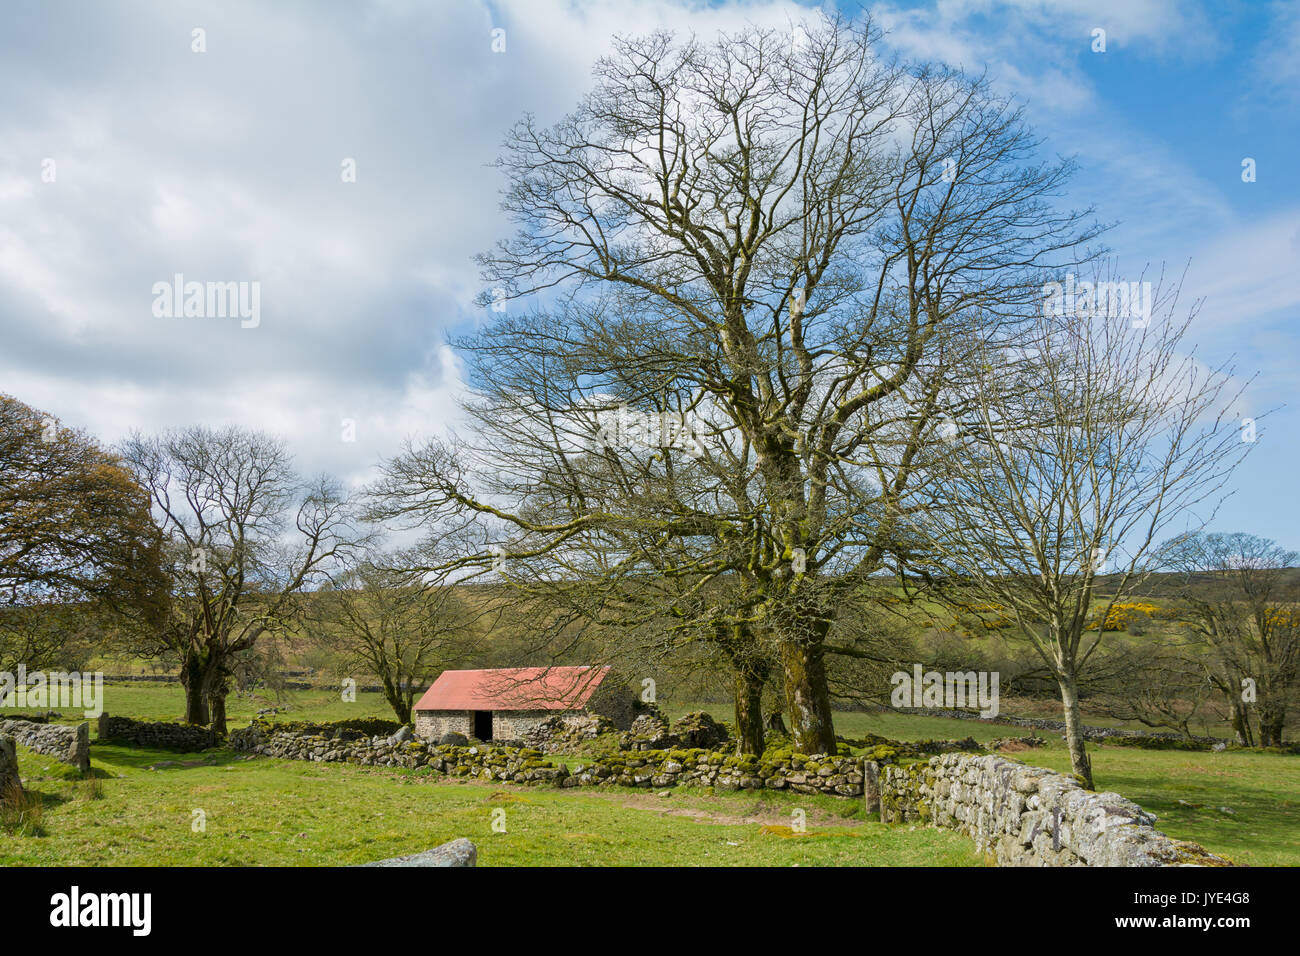 Emworthy la ferme grange abandonnée dans le parc national du Dartmoor, England, UK Banque D'Images